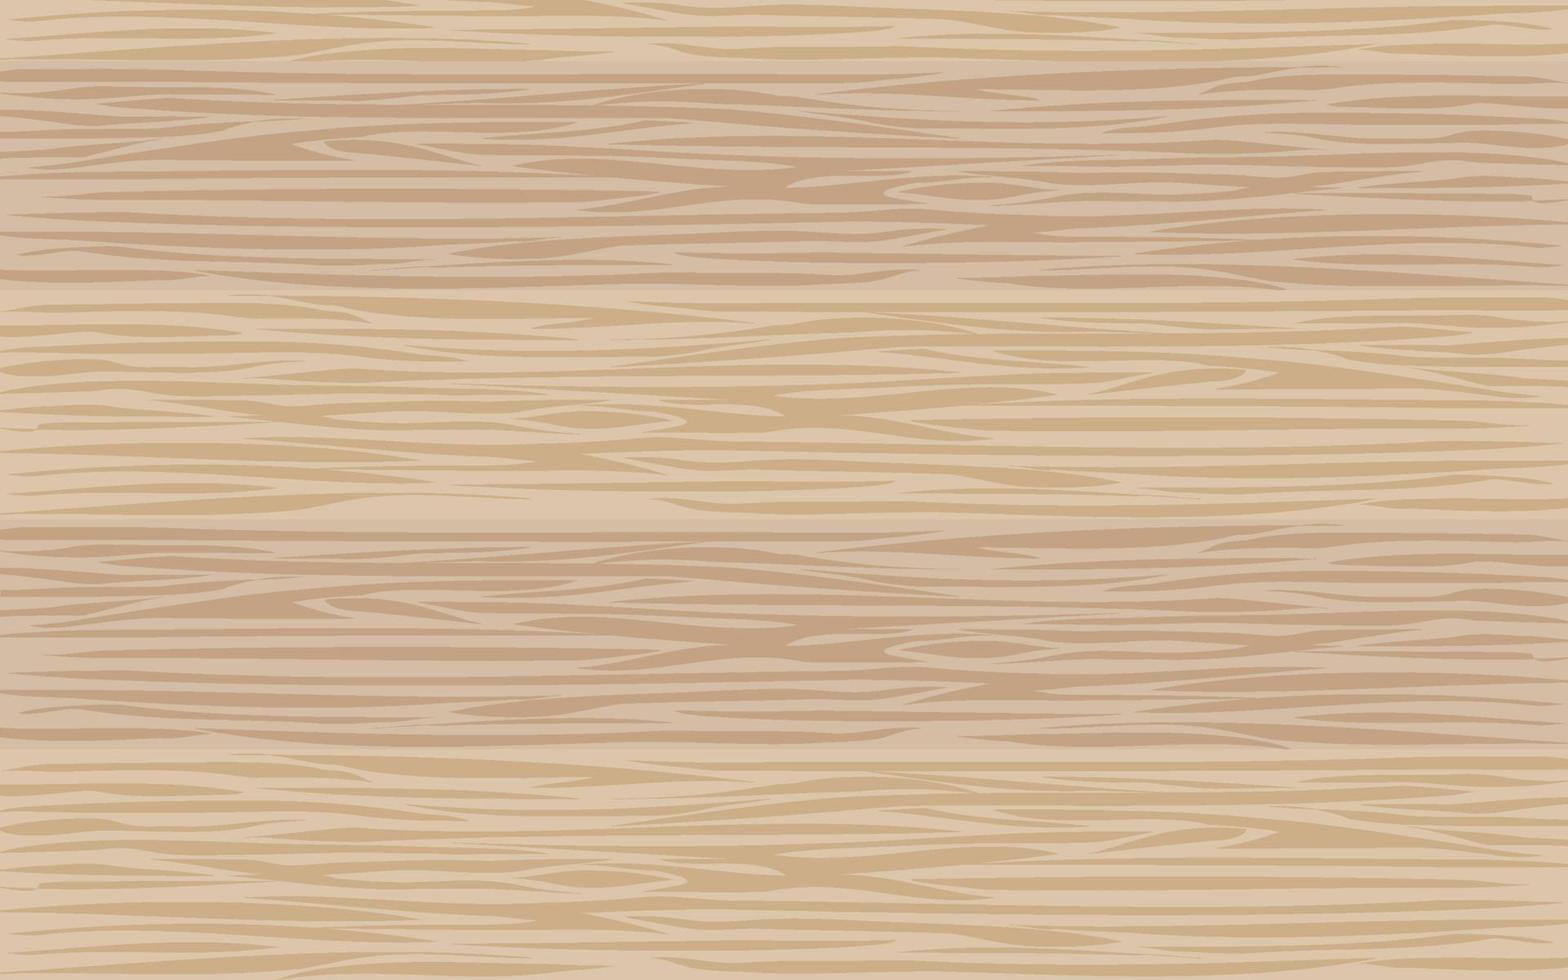 fond de bois clair. texture de planches de bois brun clair. vecteur